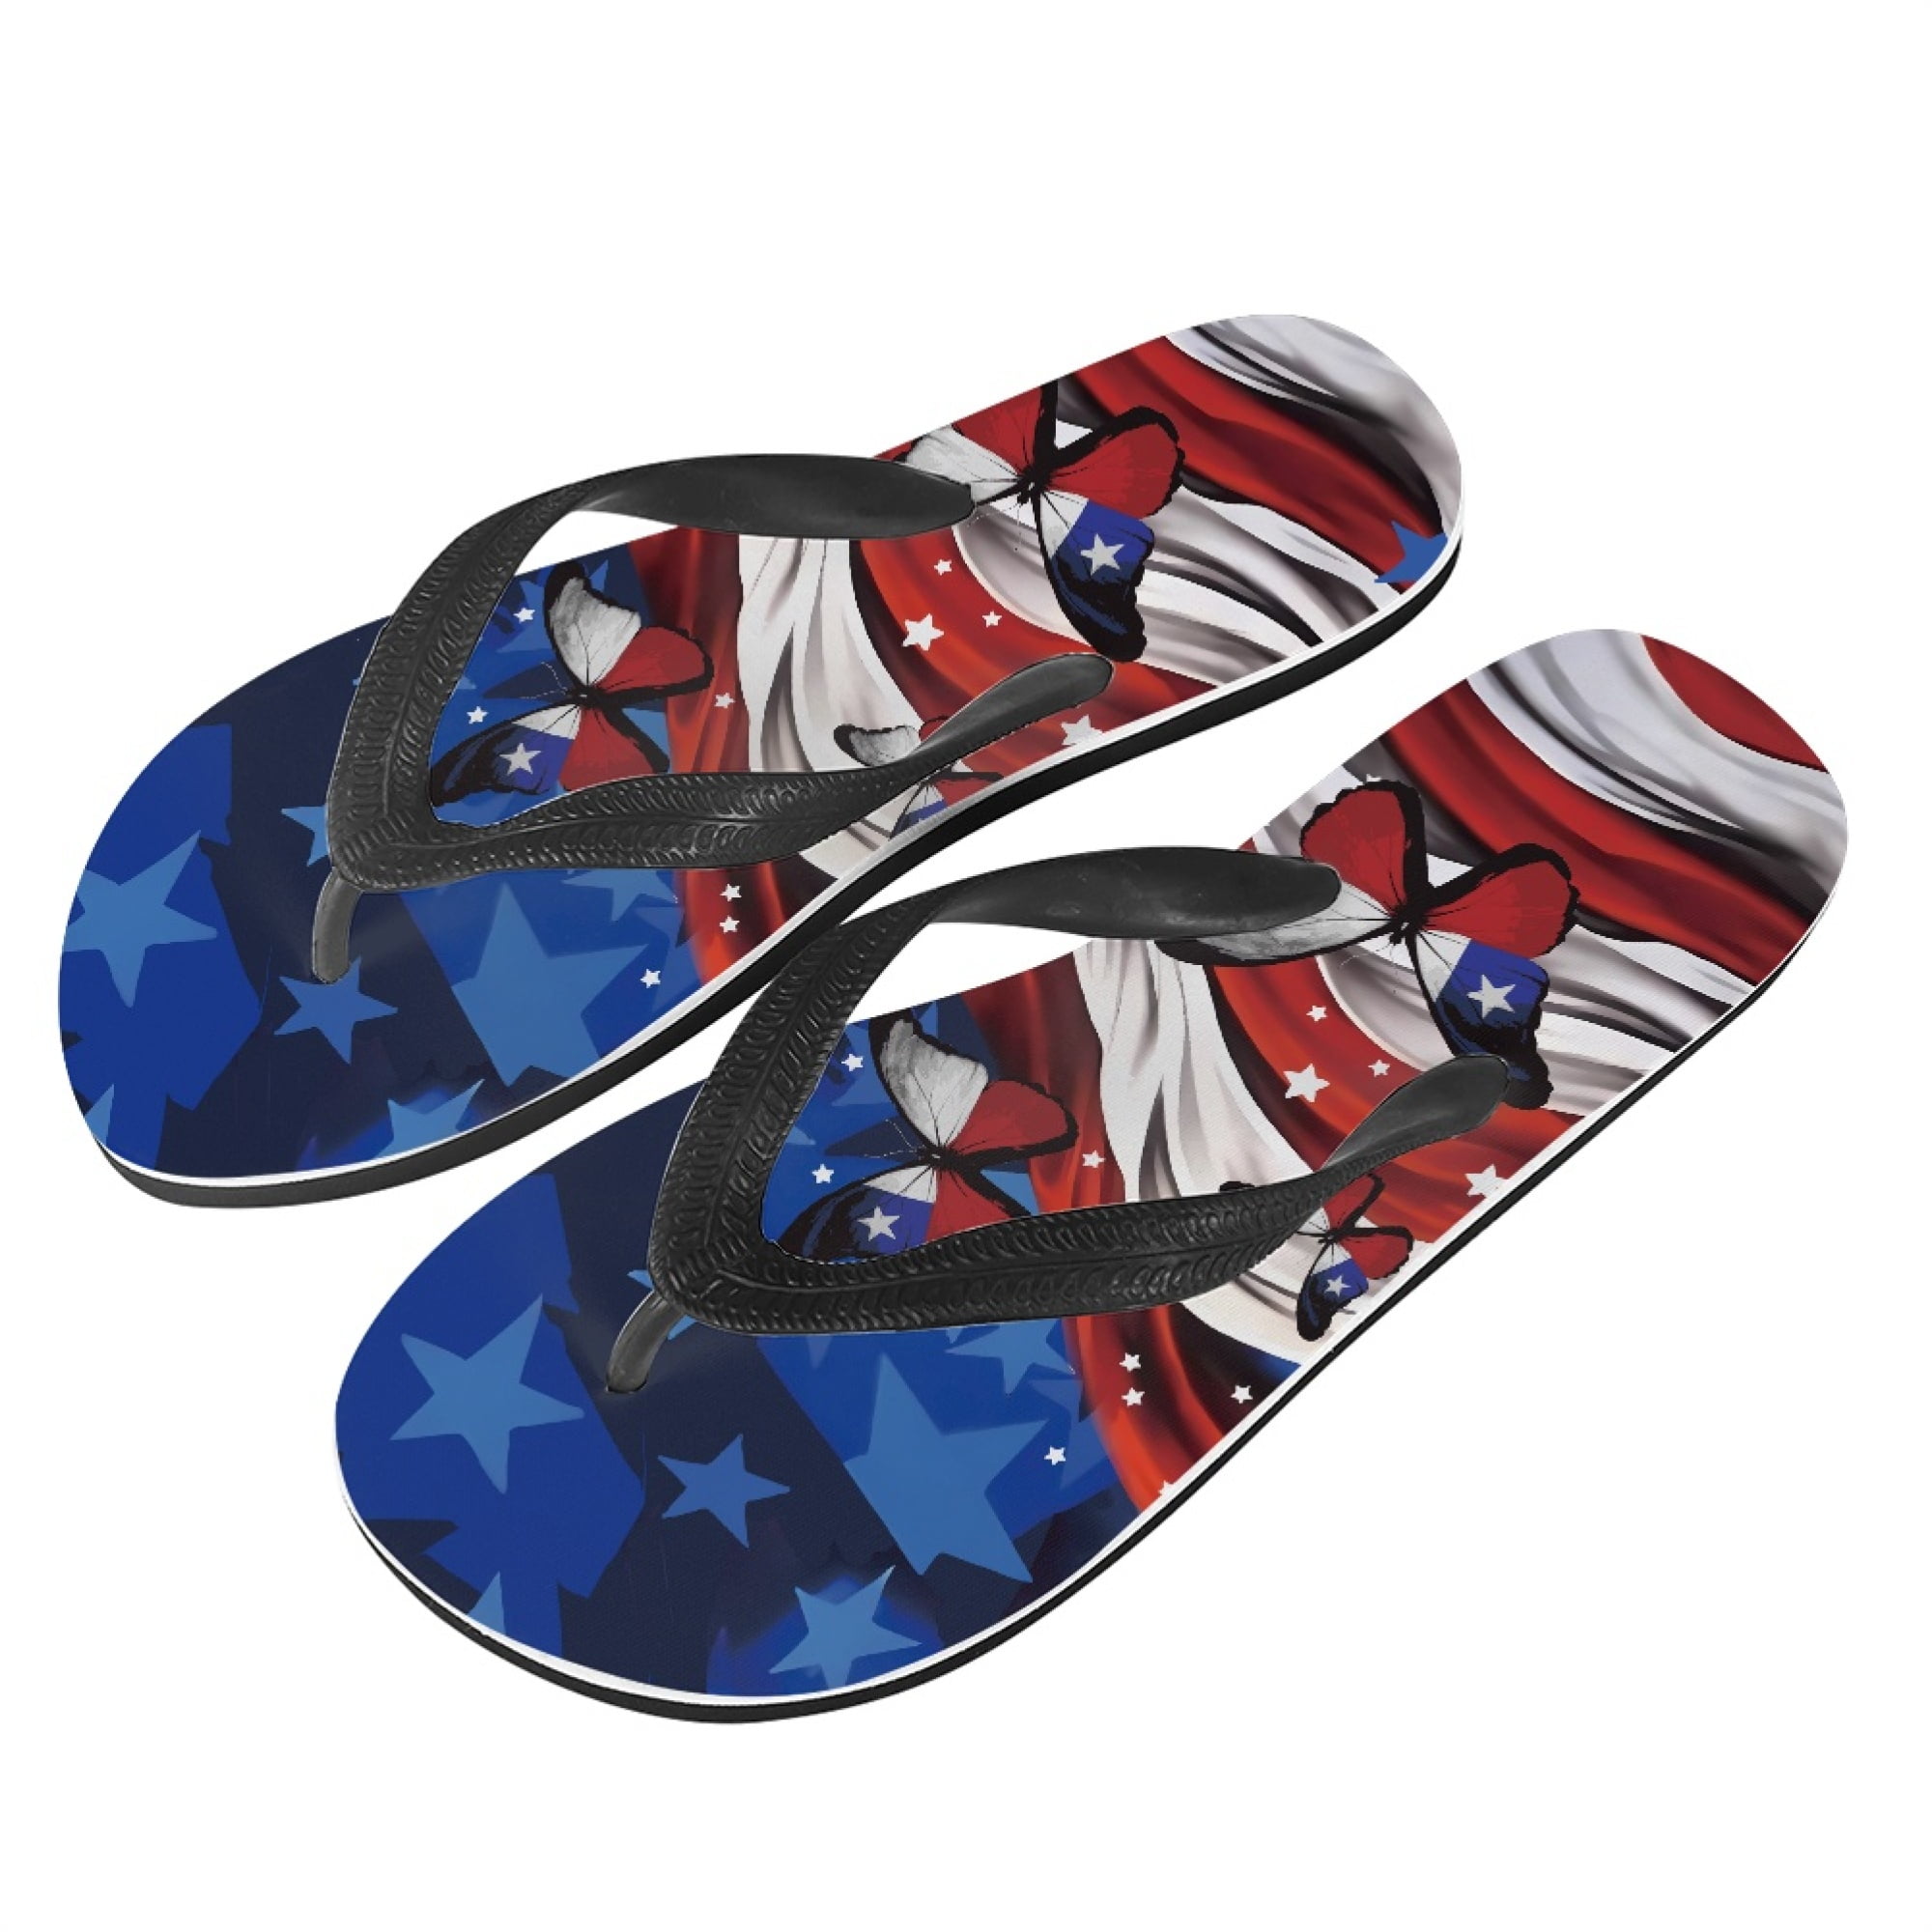 AIT Corporation Marvel Captain America Beach Sandals Slides Flip Flops for  Kids Blue Size: 9/10 : Amazon.com.au: Clothing, Shoes & Accessories